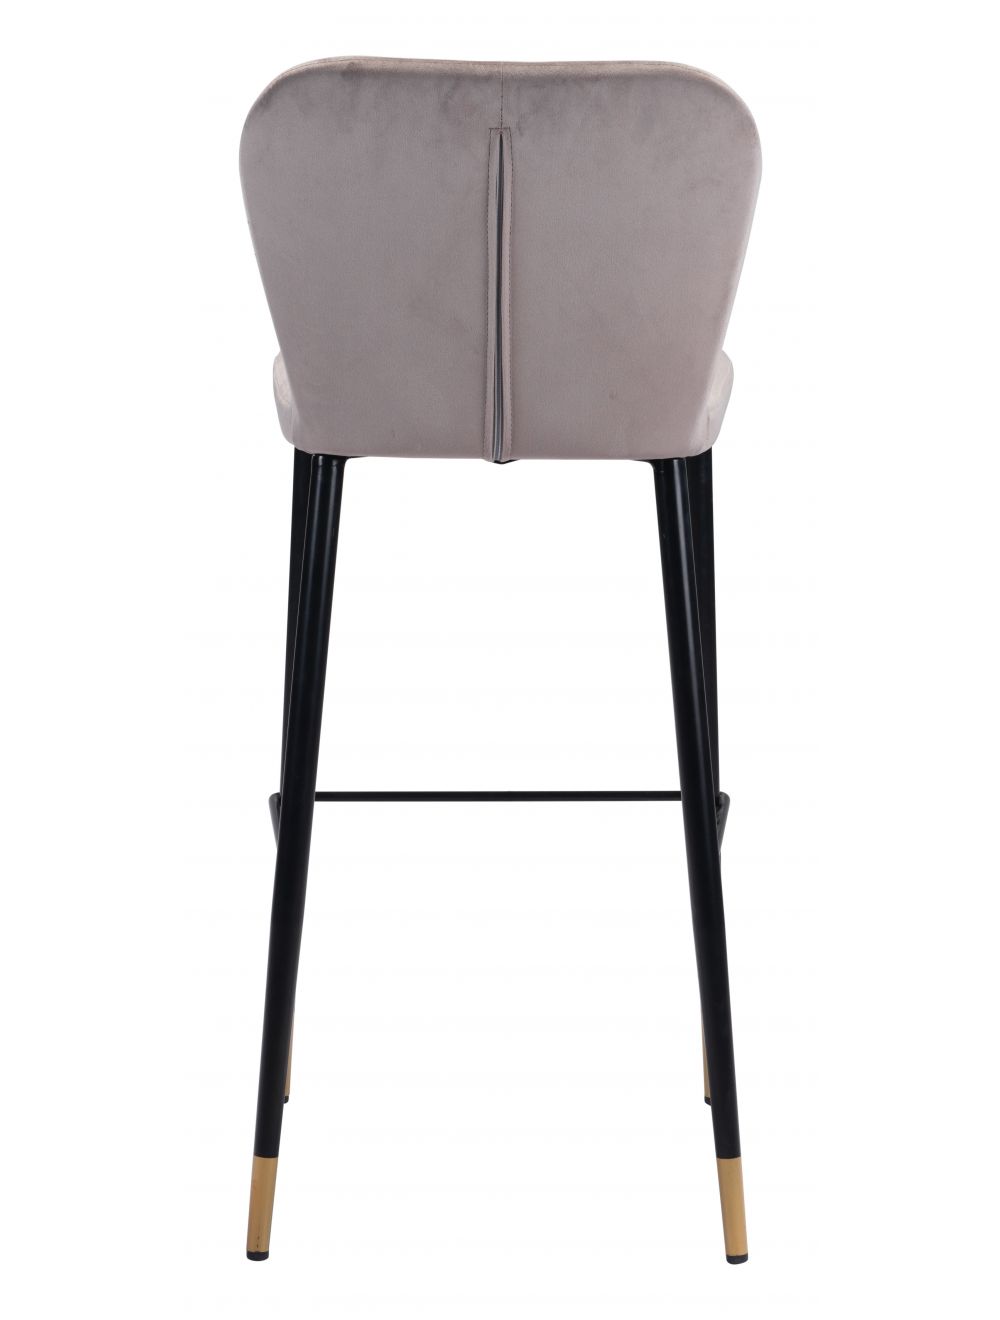 Manchester Bar Chair (Set of 2) Gray